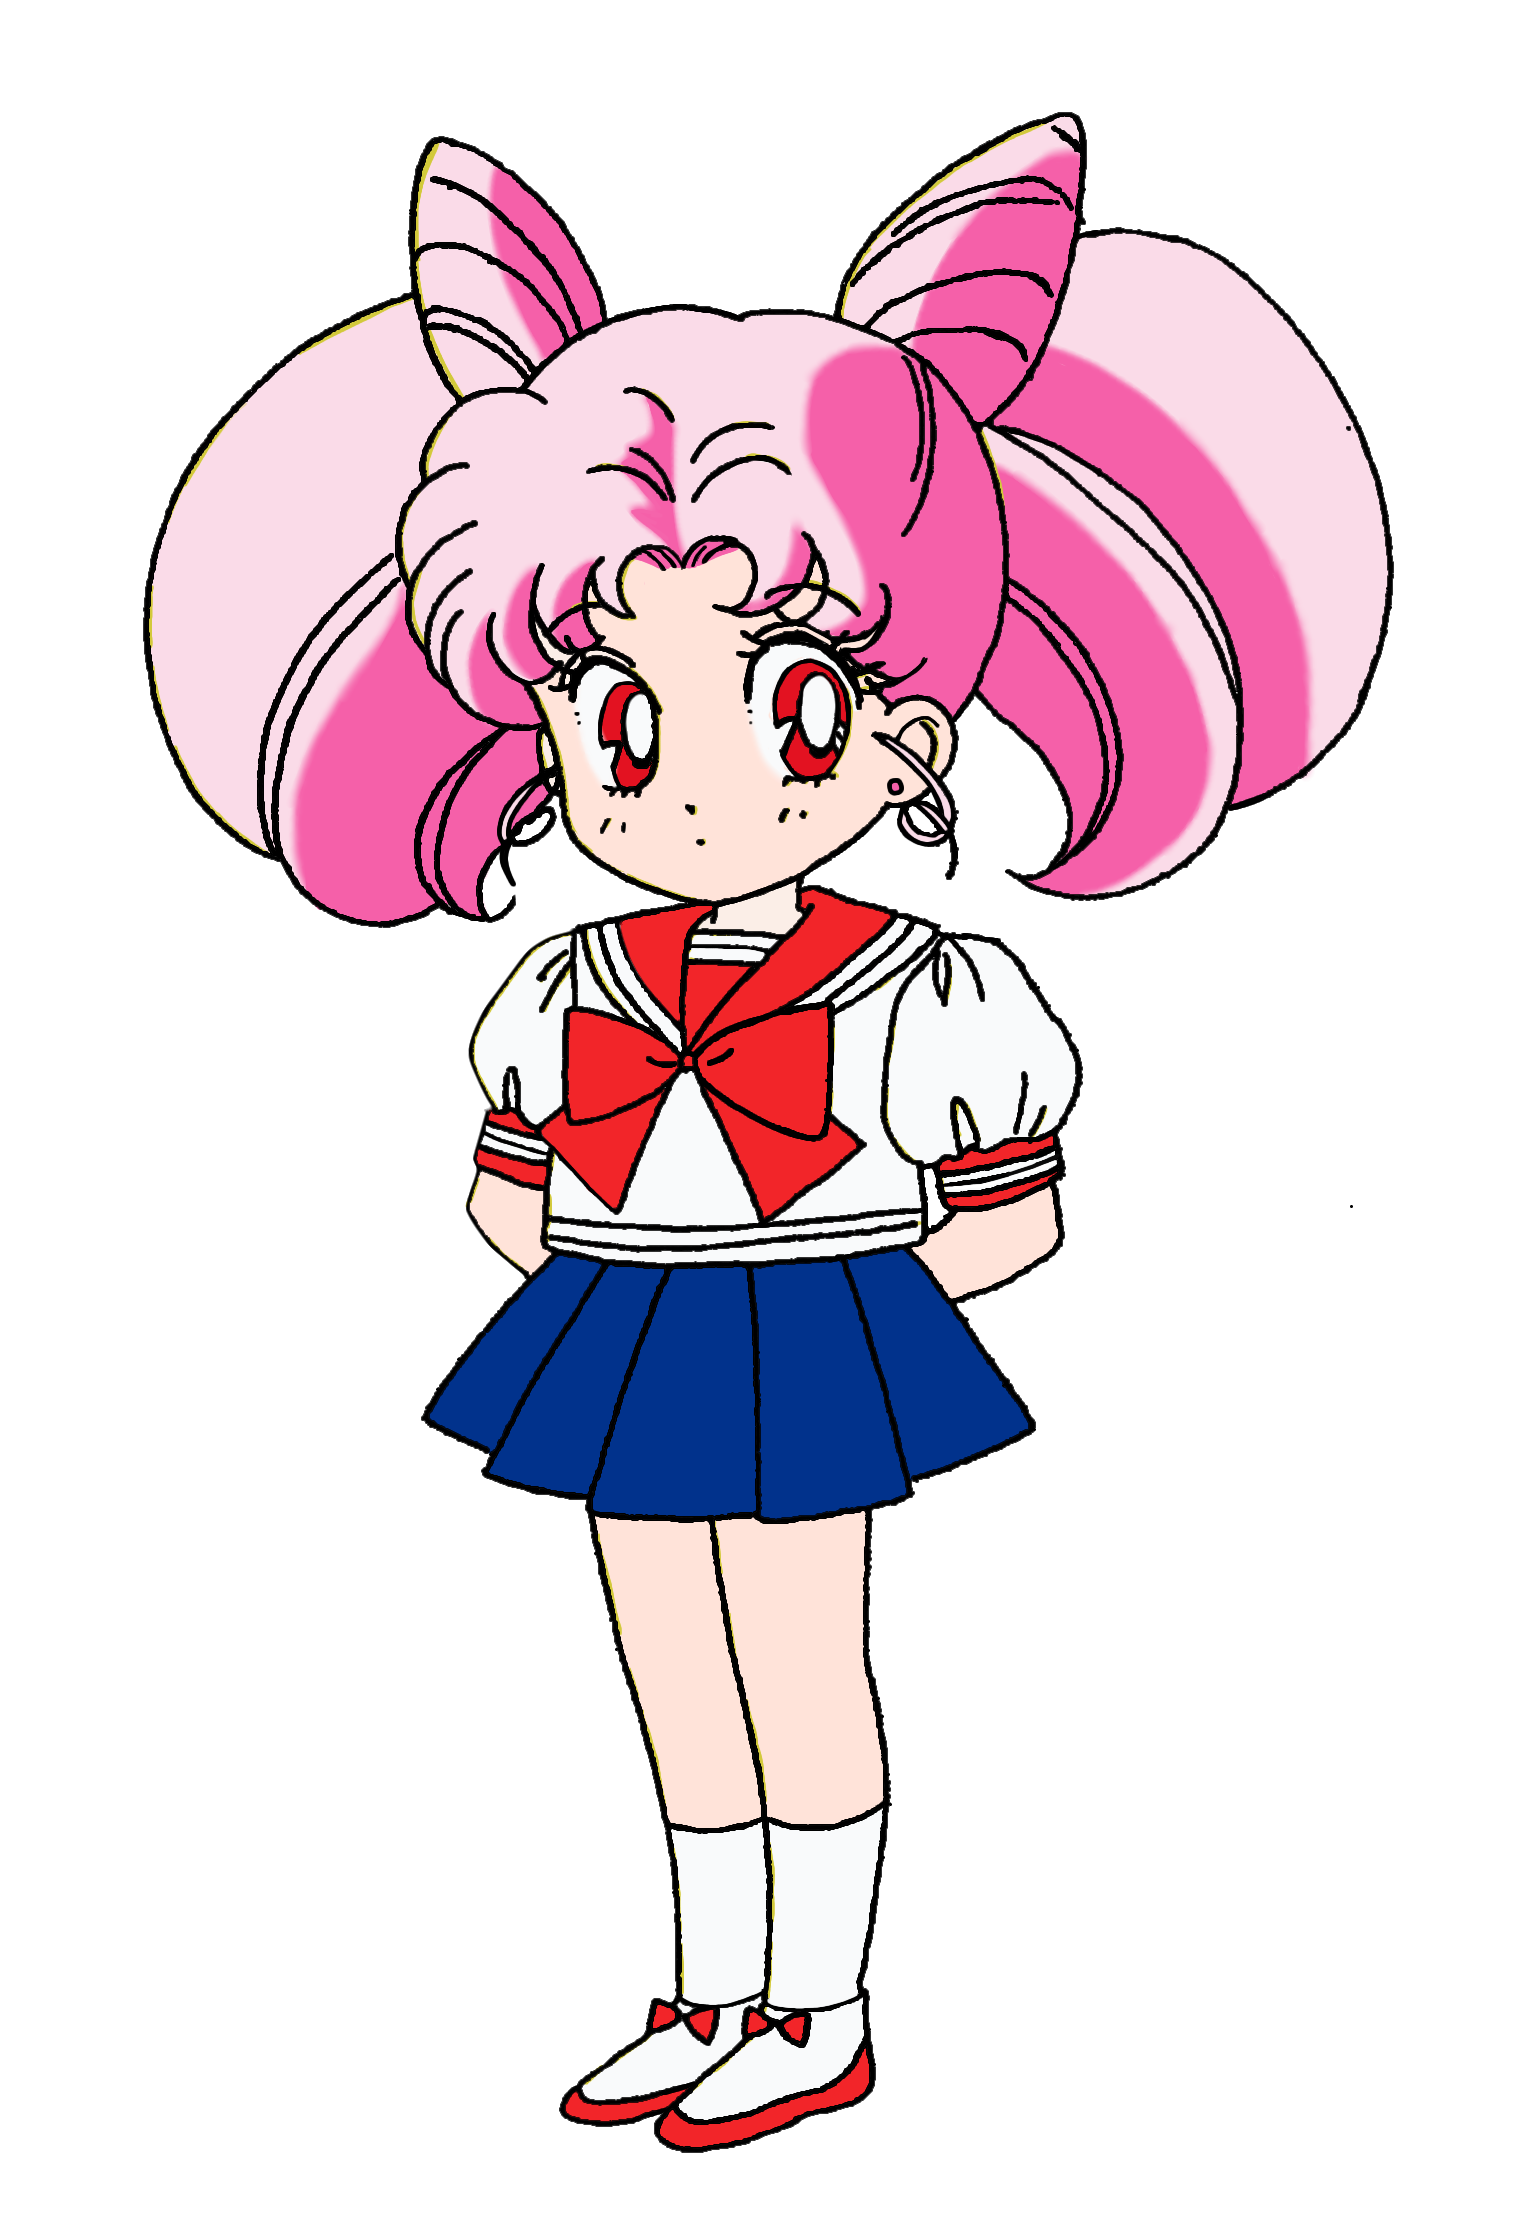 Chibiusa Tsukino - Chào mừng bạn đến với thế giới của Chibiusa Tsukino, nhân vật nhỏ bé và đáng yêu trong bộ truyện tranh nổi tiếng Sailor Moon. Cô bé sẽ đưa bạn vào những chuyến phiêu lưu thú vị và đầy thử thách trong vũ trụ để bảo vệ hòa bình. Hãy xem hình ảnh để cảm nhận sự đáng yêu và ngọt ngào của Chibiusa!